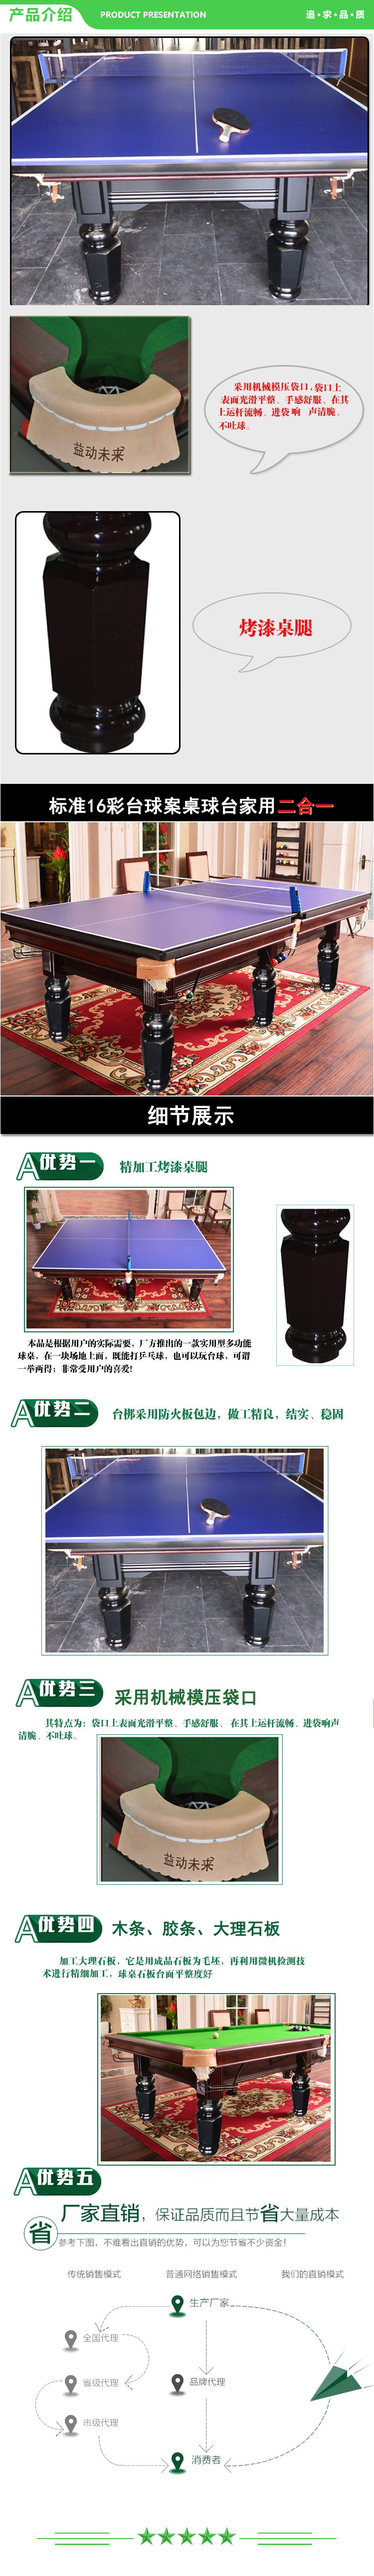 益动未来 高配二合一台球桌 台球桌（标准家庭两用台球乒乓球家用多功能台球桌） 2.jpg